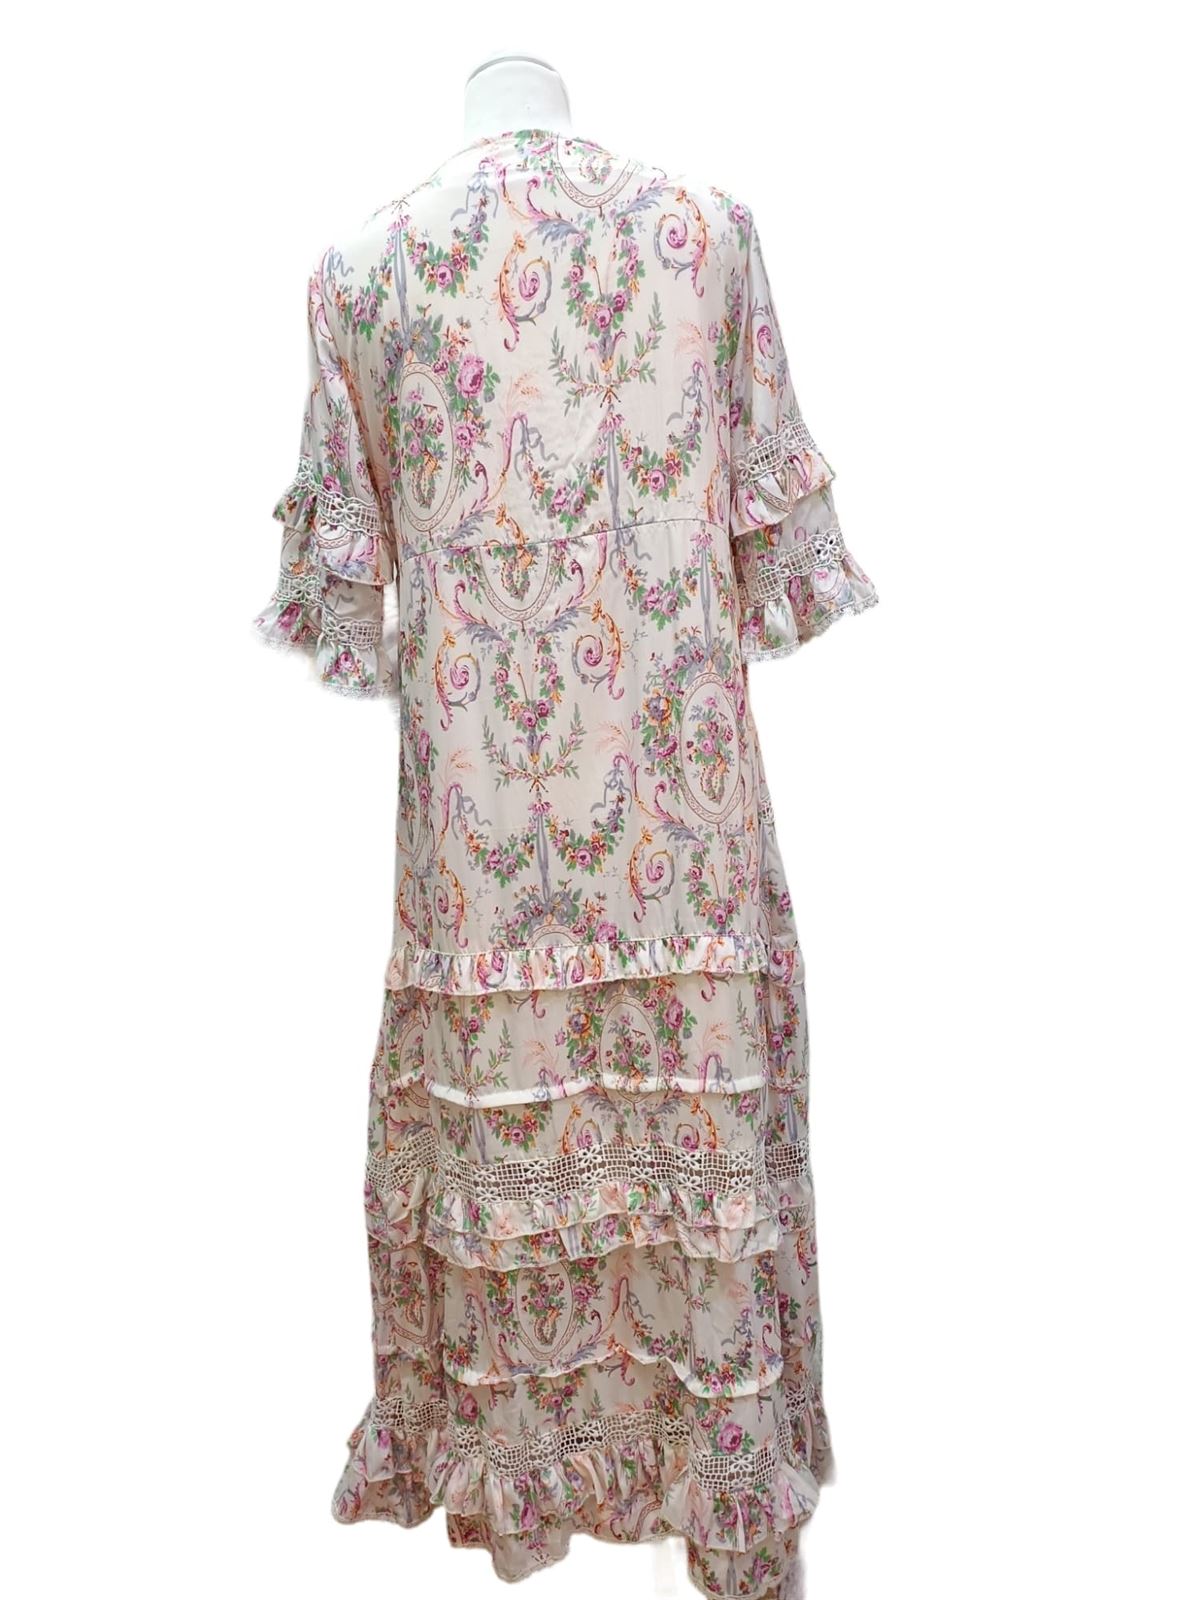 Vestido original largo en seda de verano con botones - Imagen 4